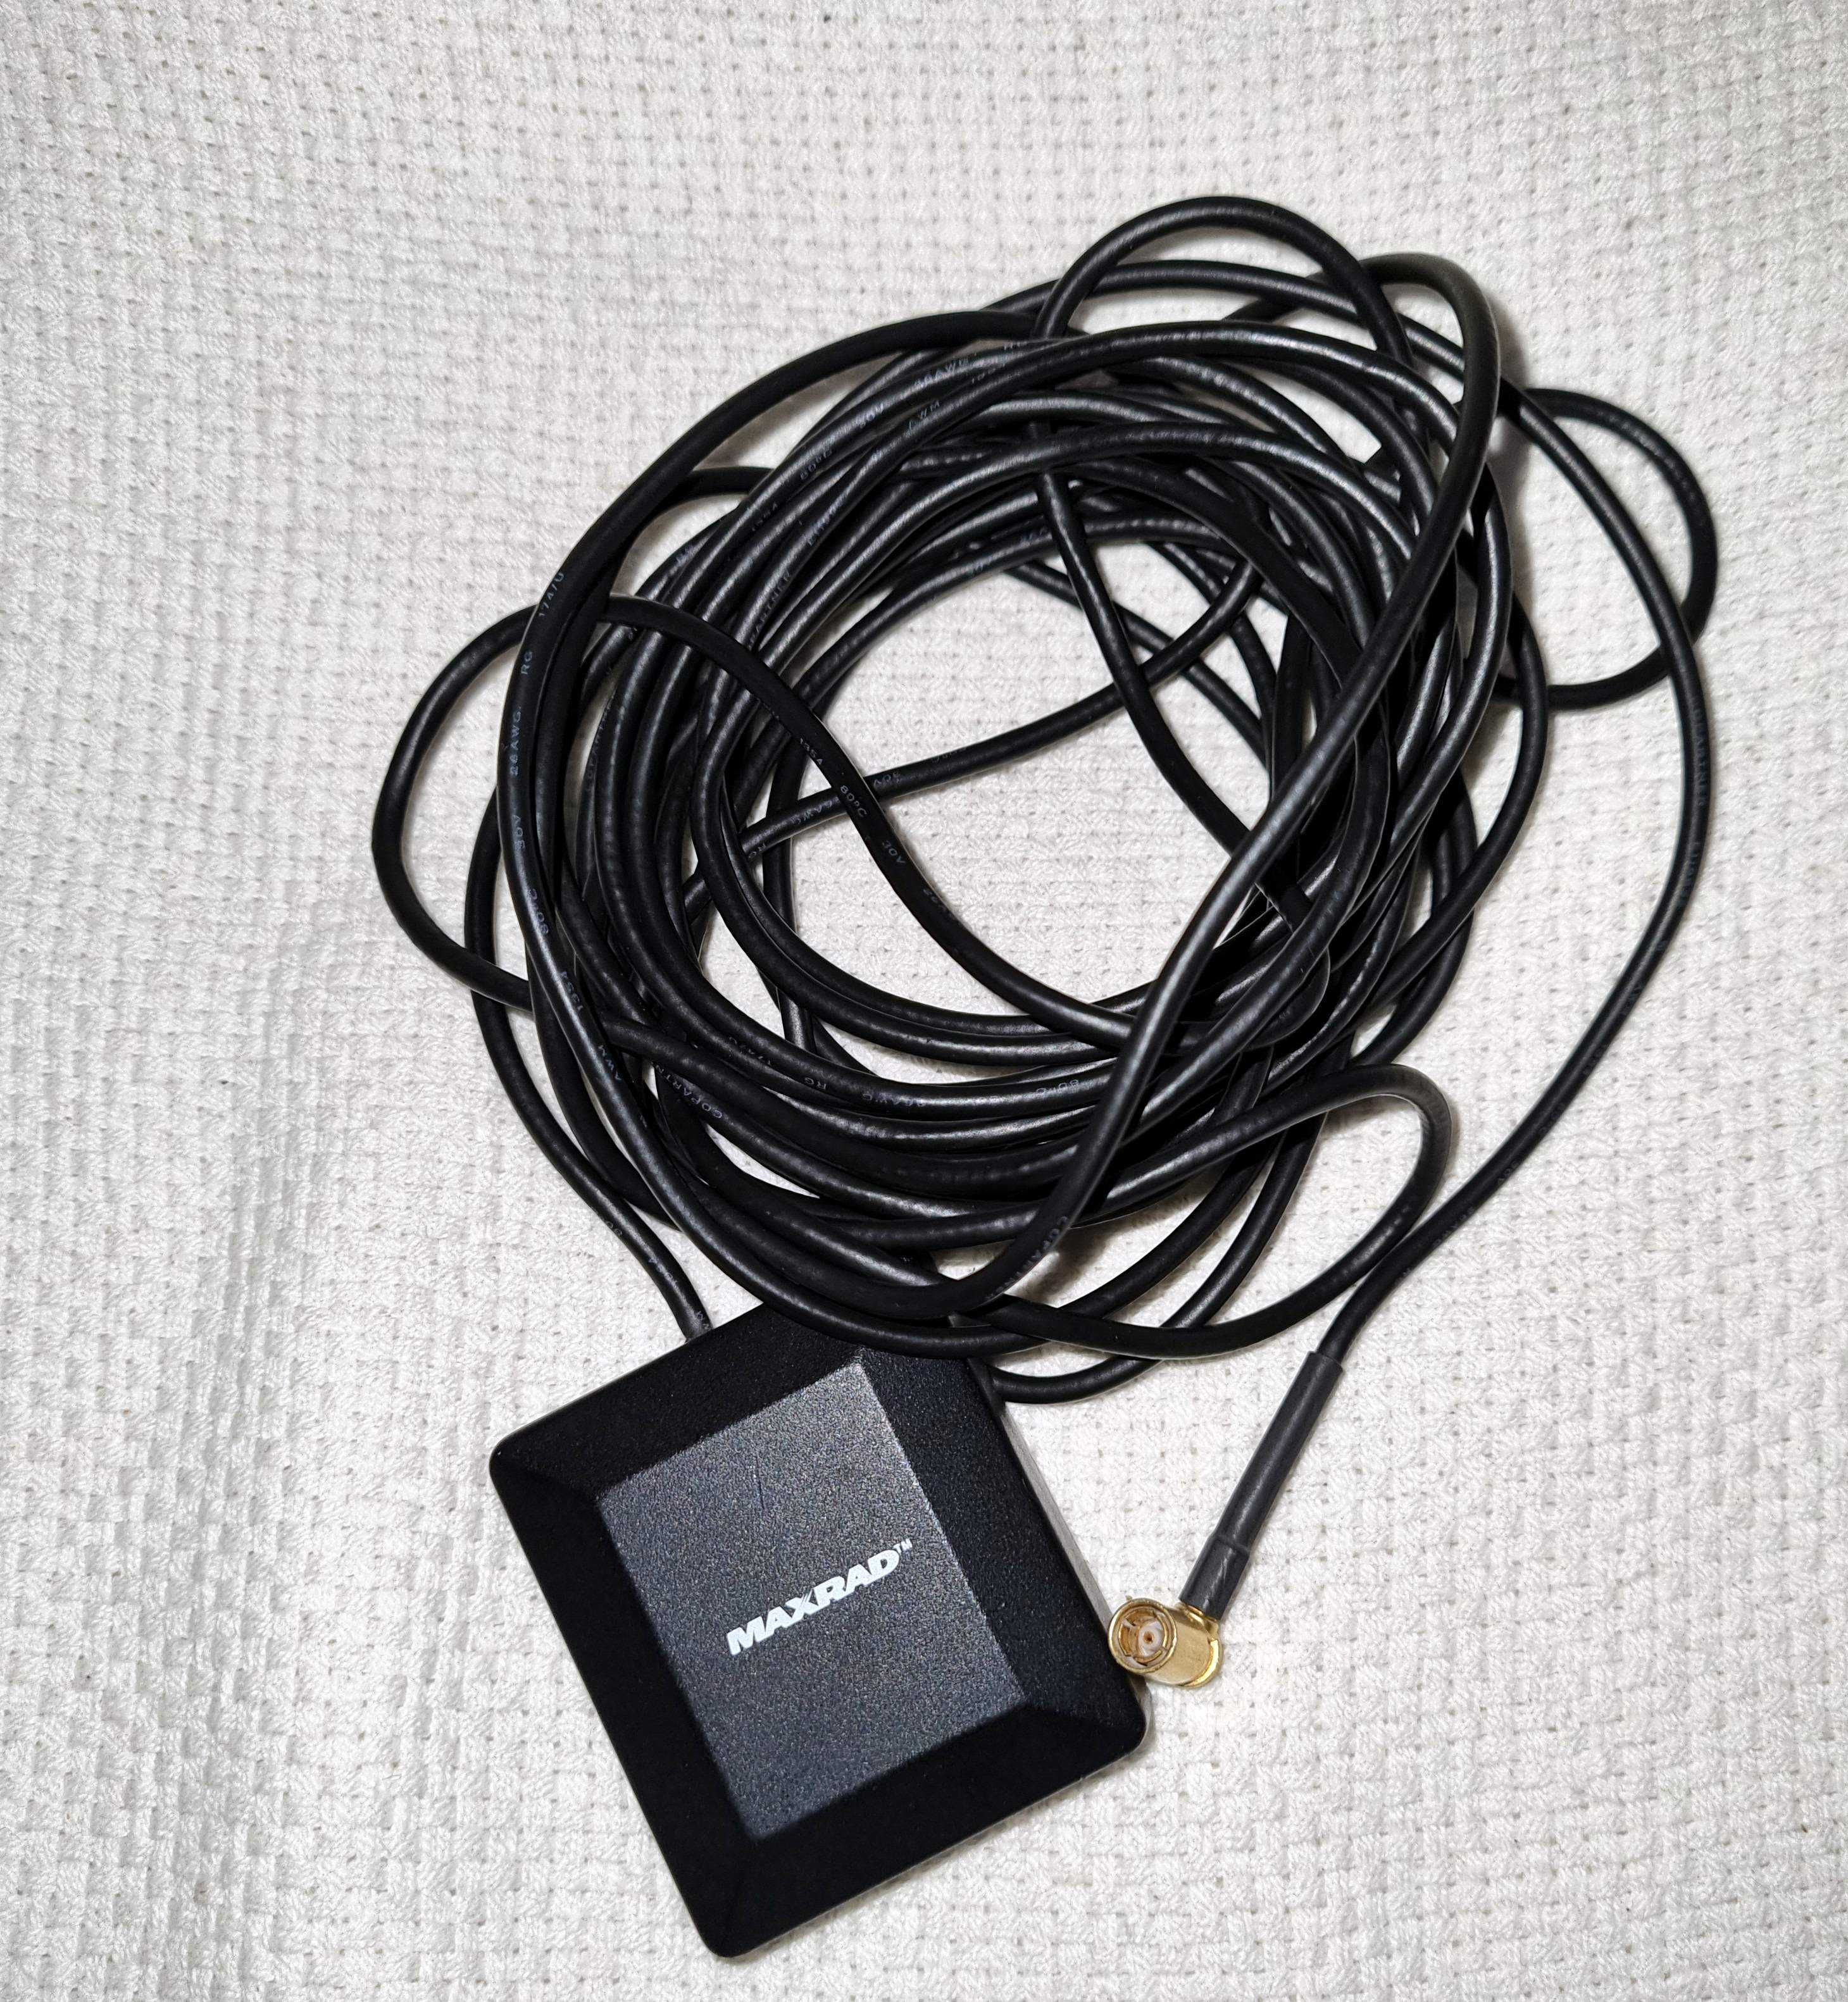 Antena GPS cablu 5m fixare magnetica